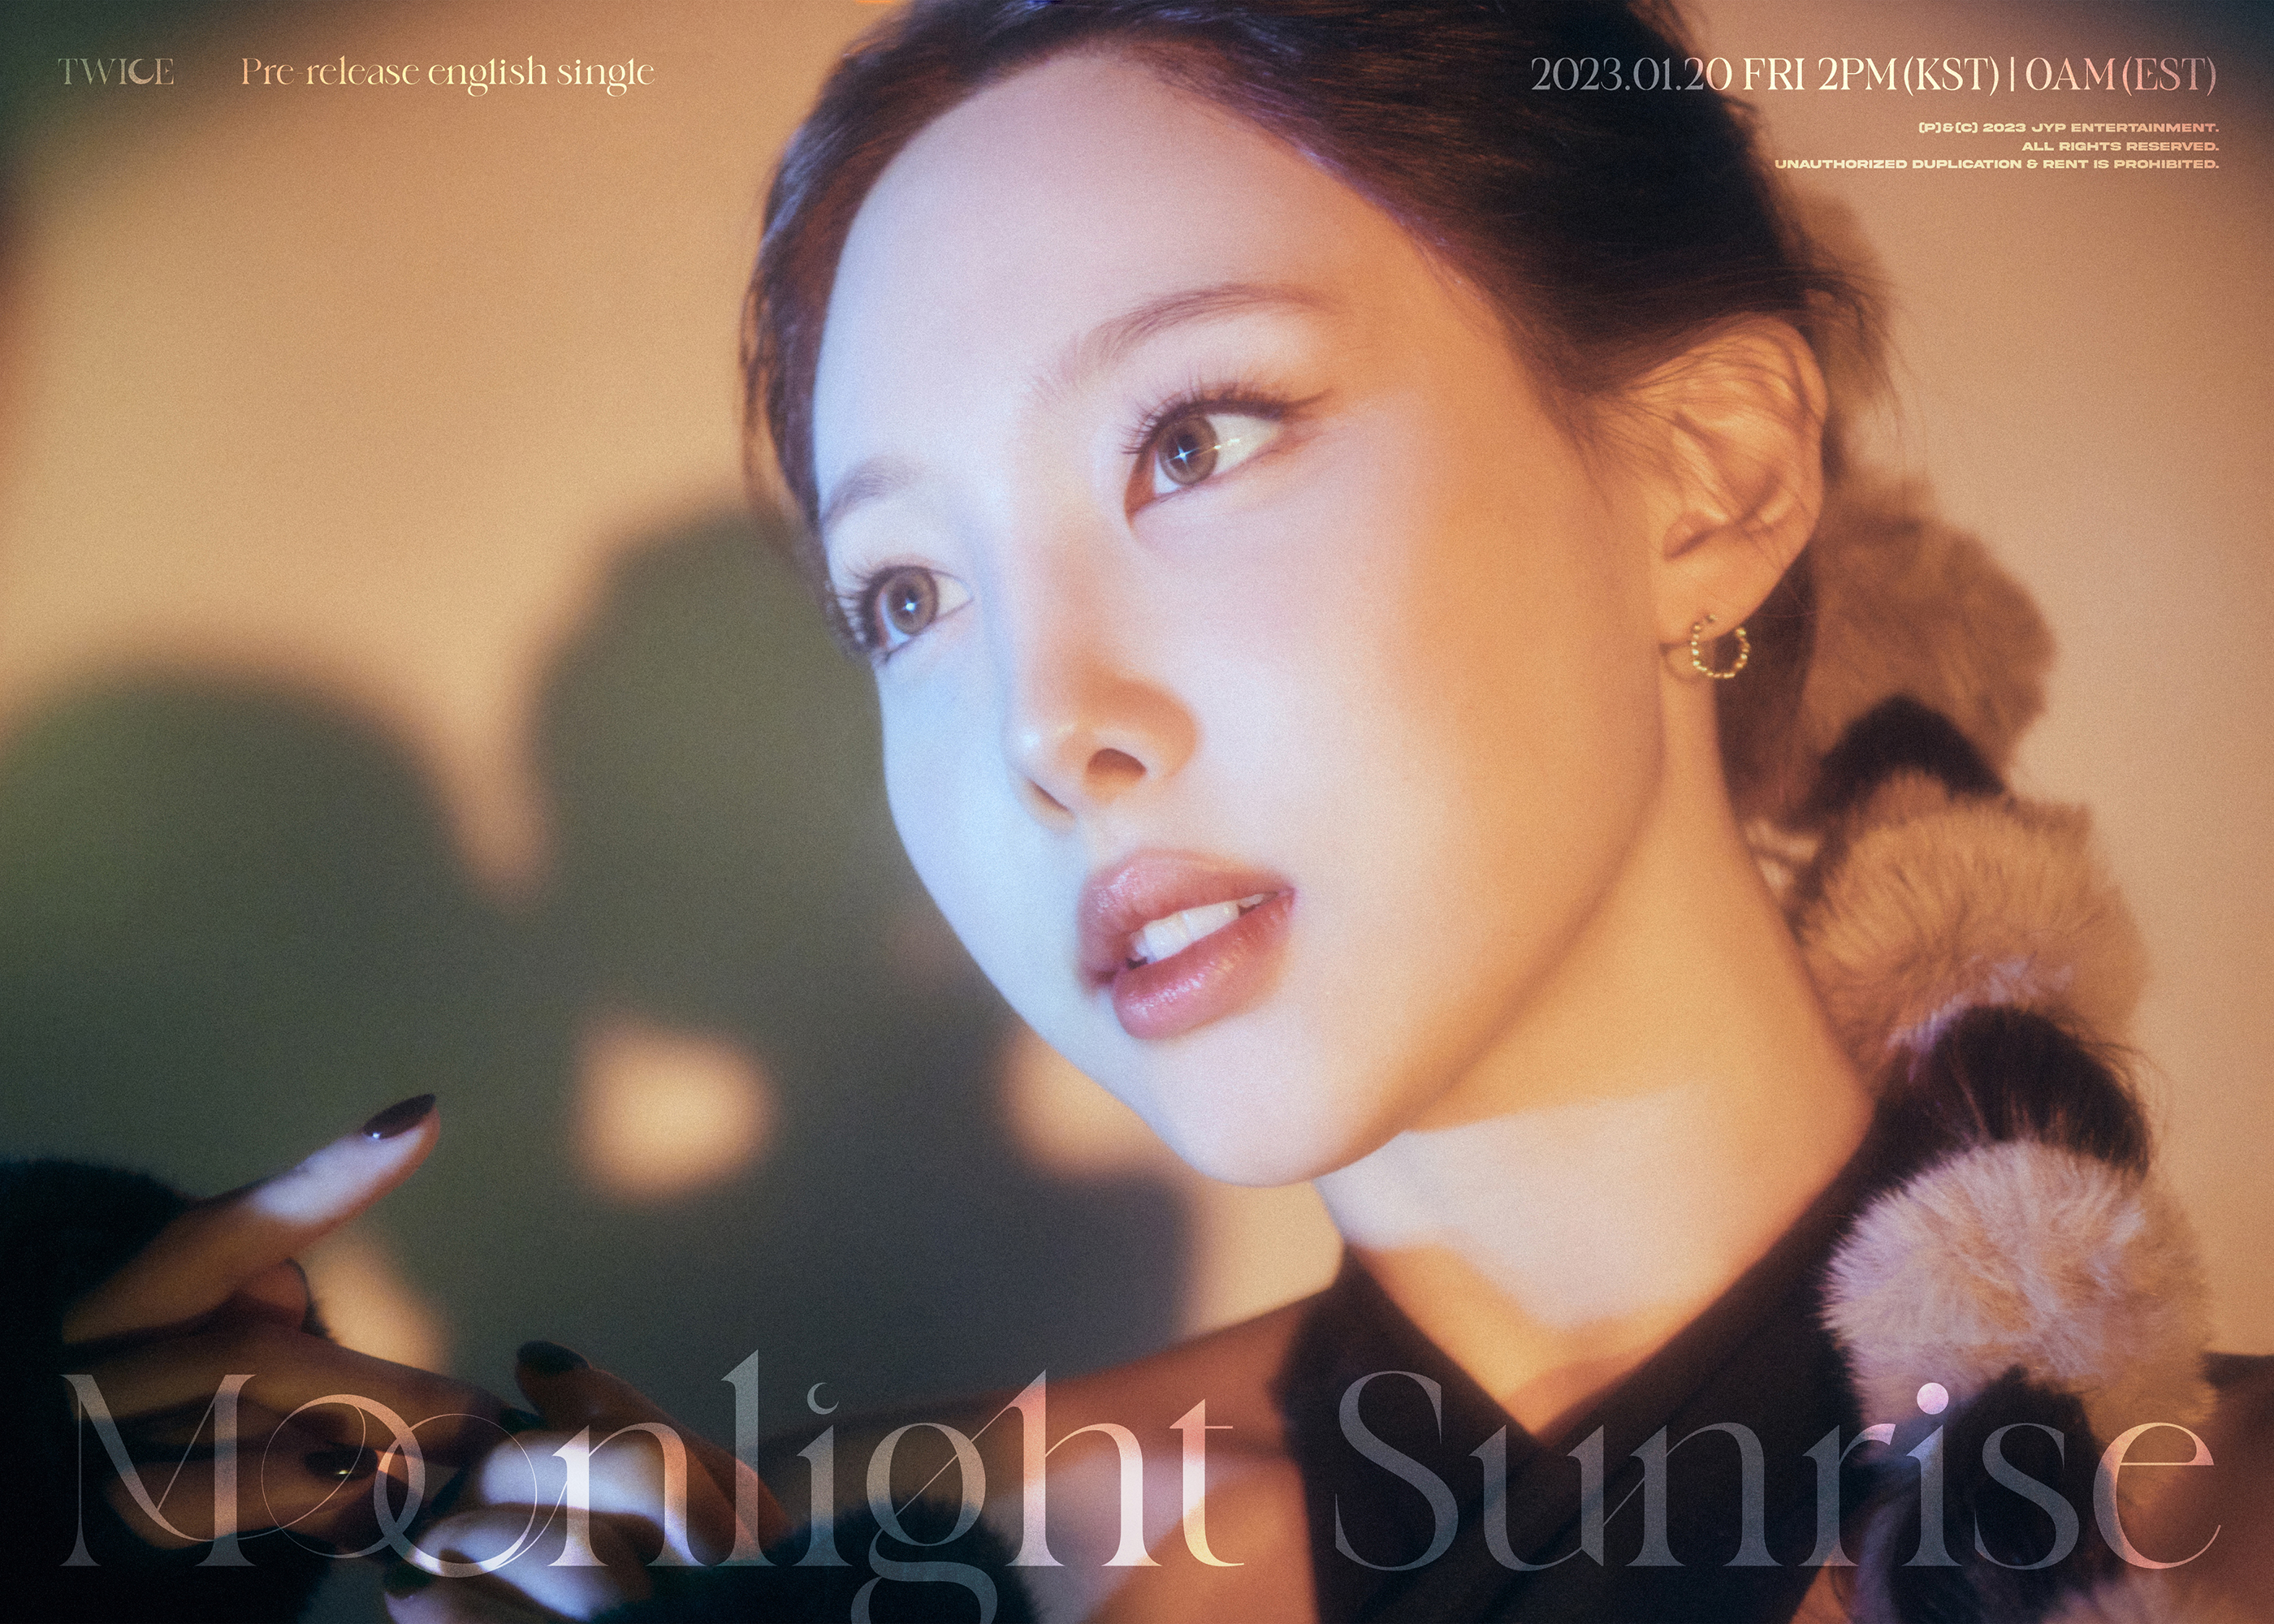 [잡담] Moonlight Sunrise 노래 나오기 8일 전..🌄 | 인스티즈